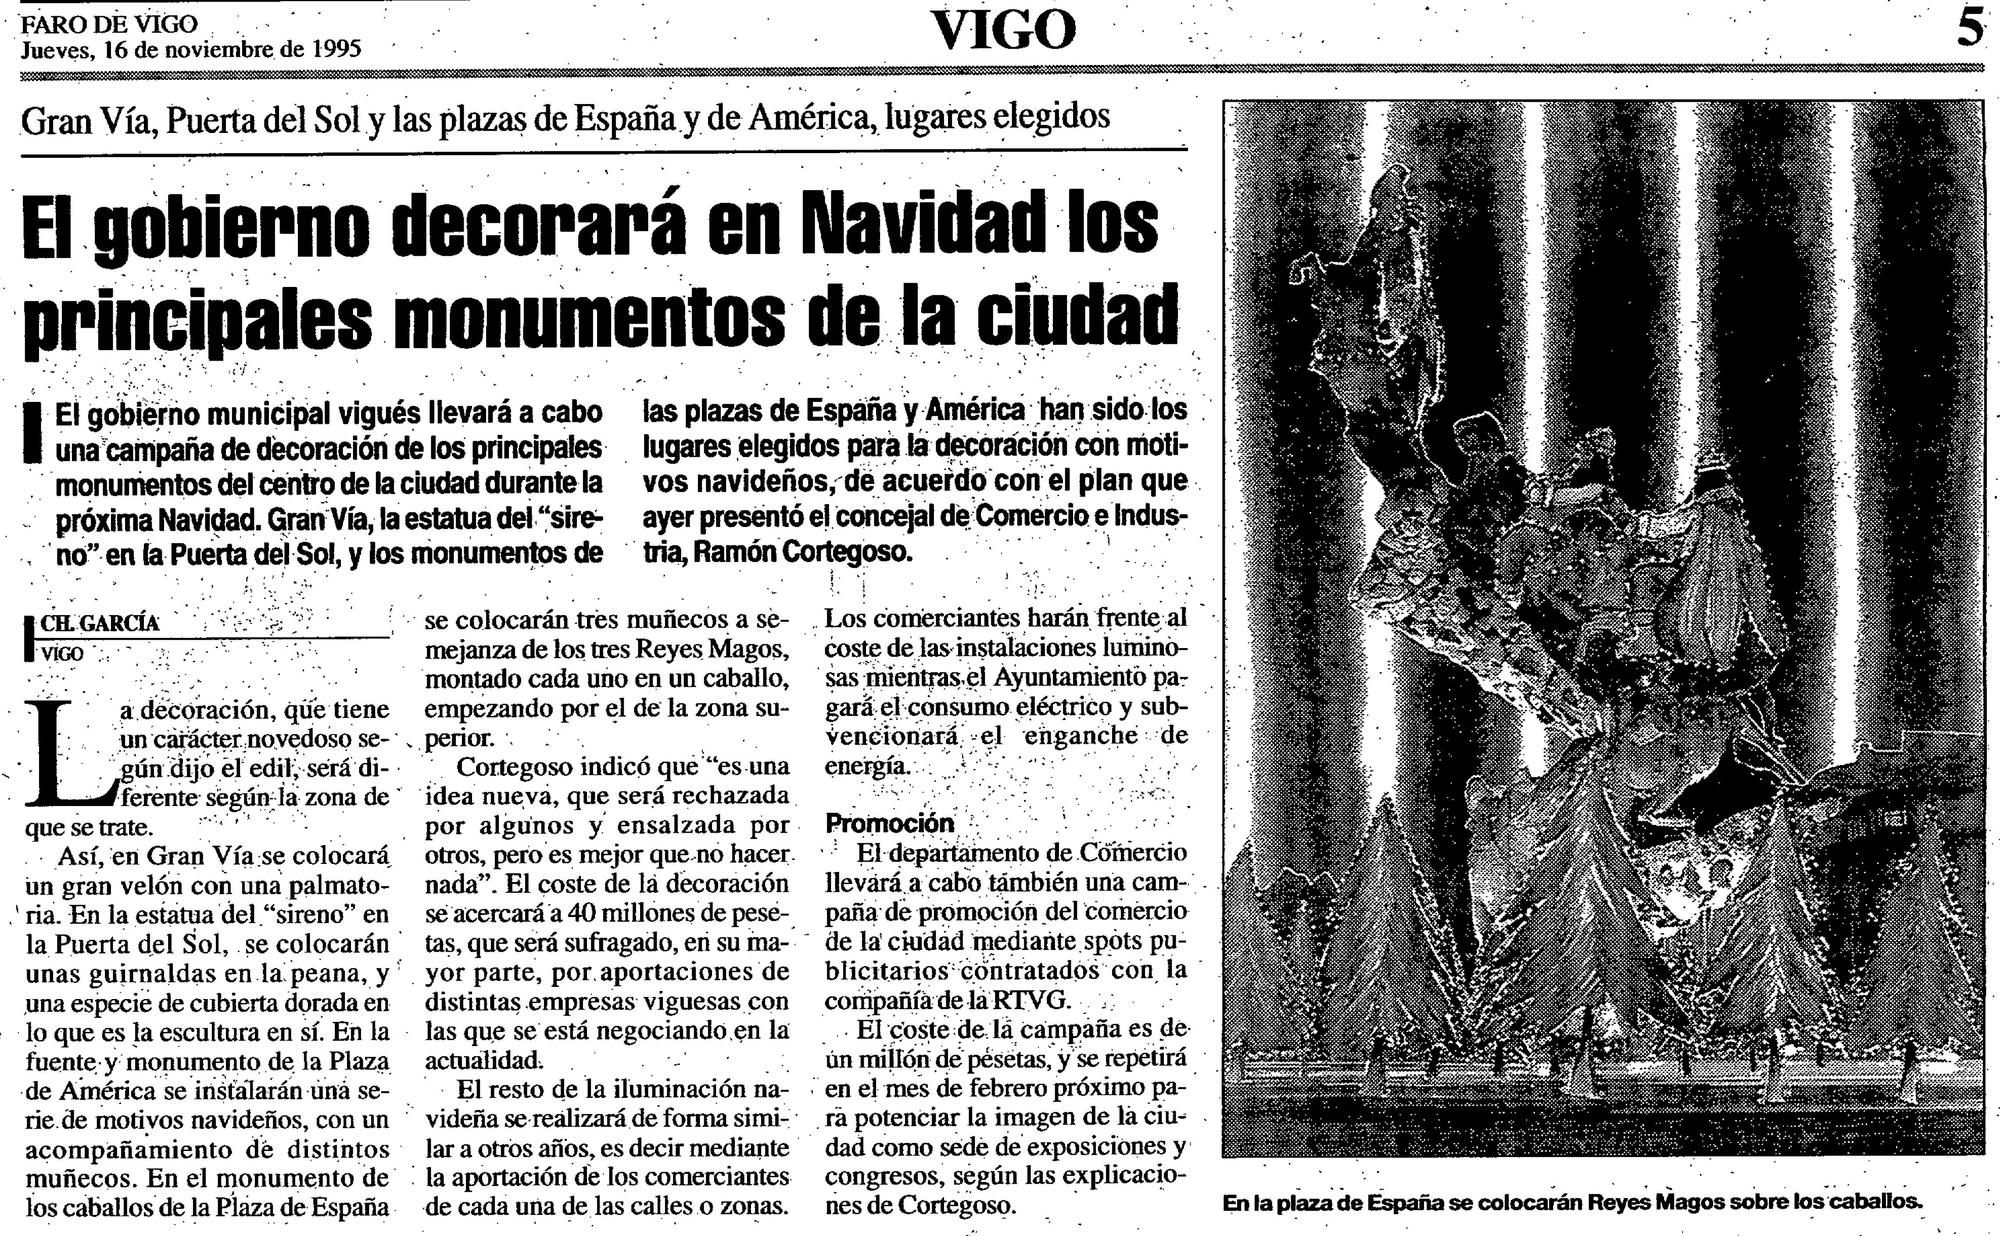 Página de FARO DE VIGO en la que se anunciaban las novedades de la Navidad de 1995.